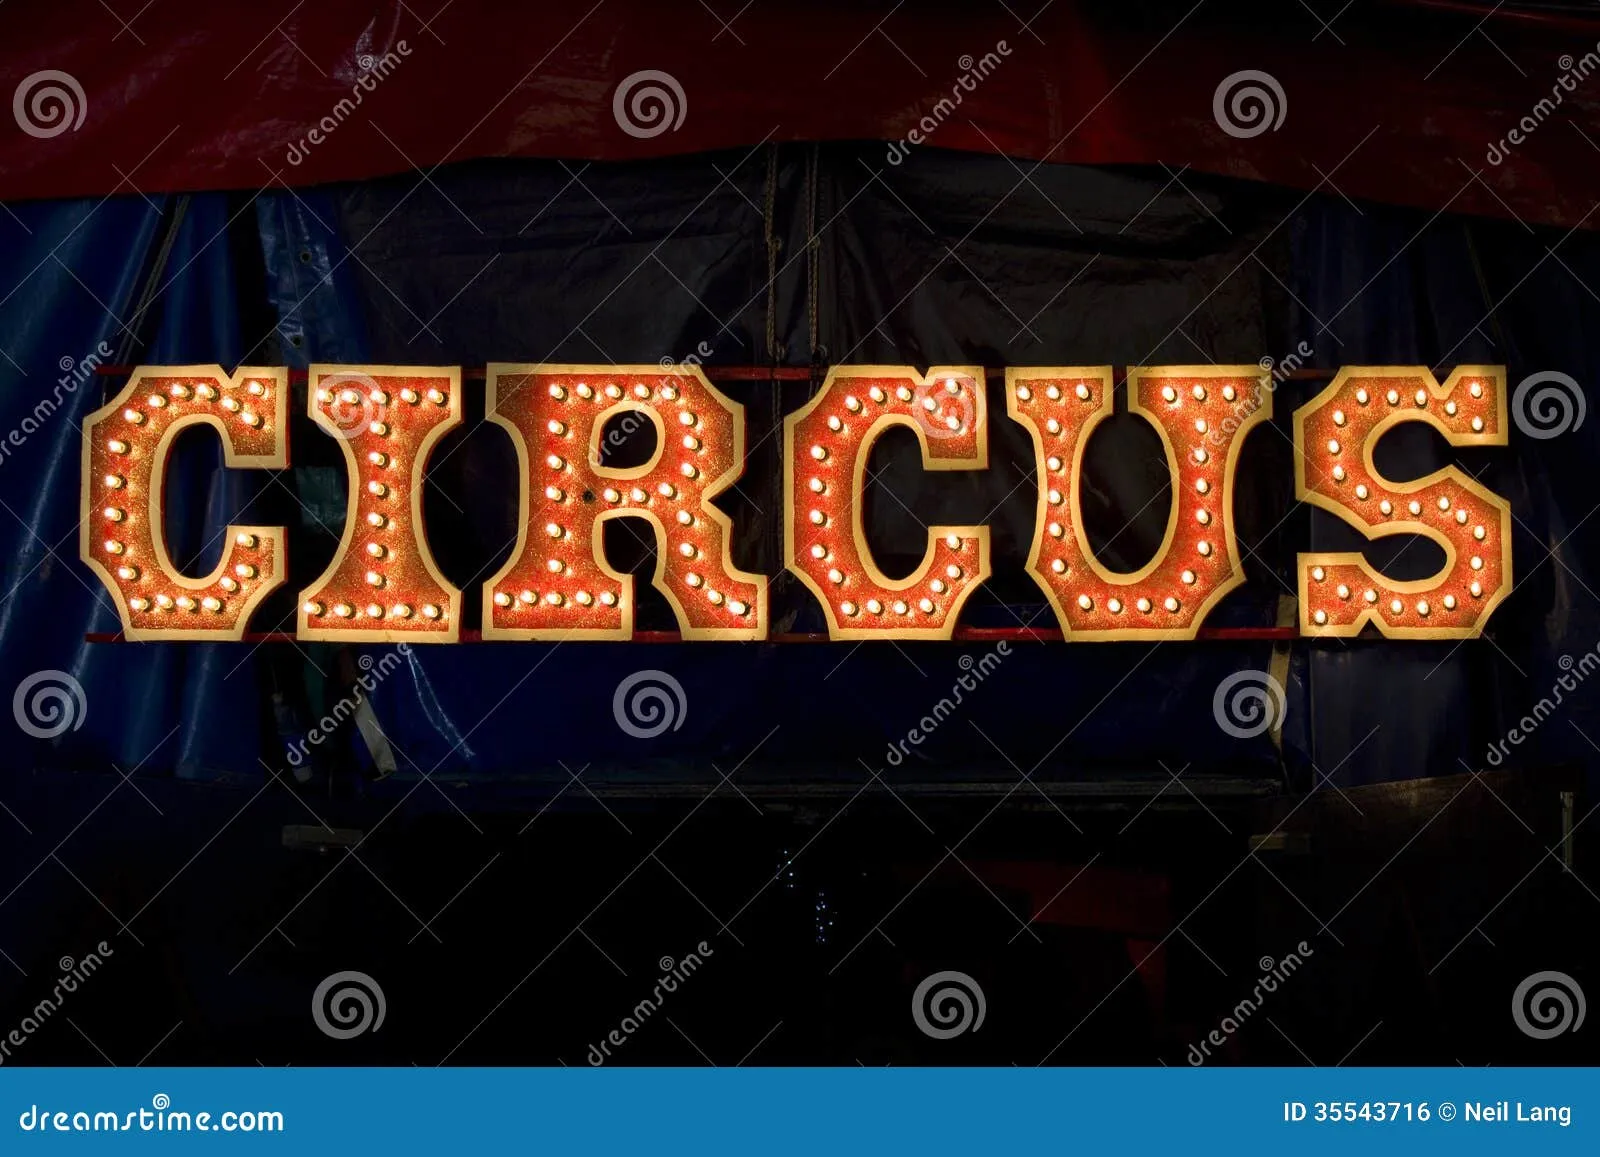 Letras Del Circo Imagen de archivo libre de regalías - Imagen ...